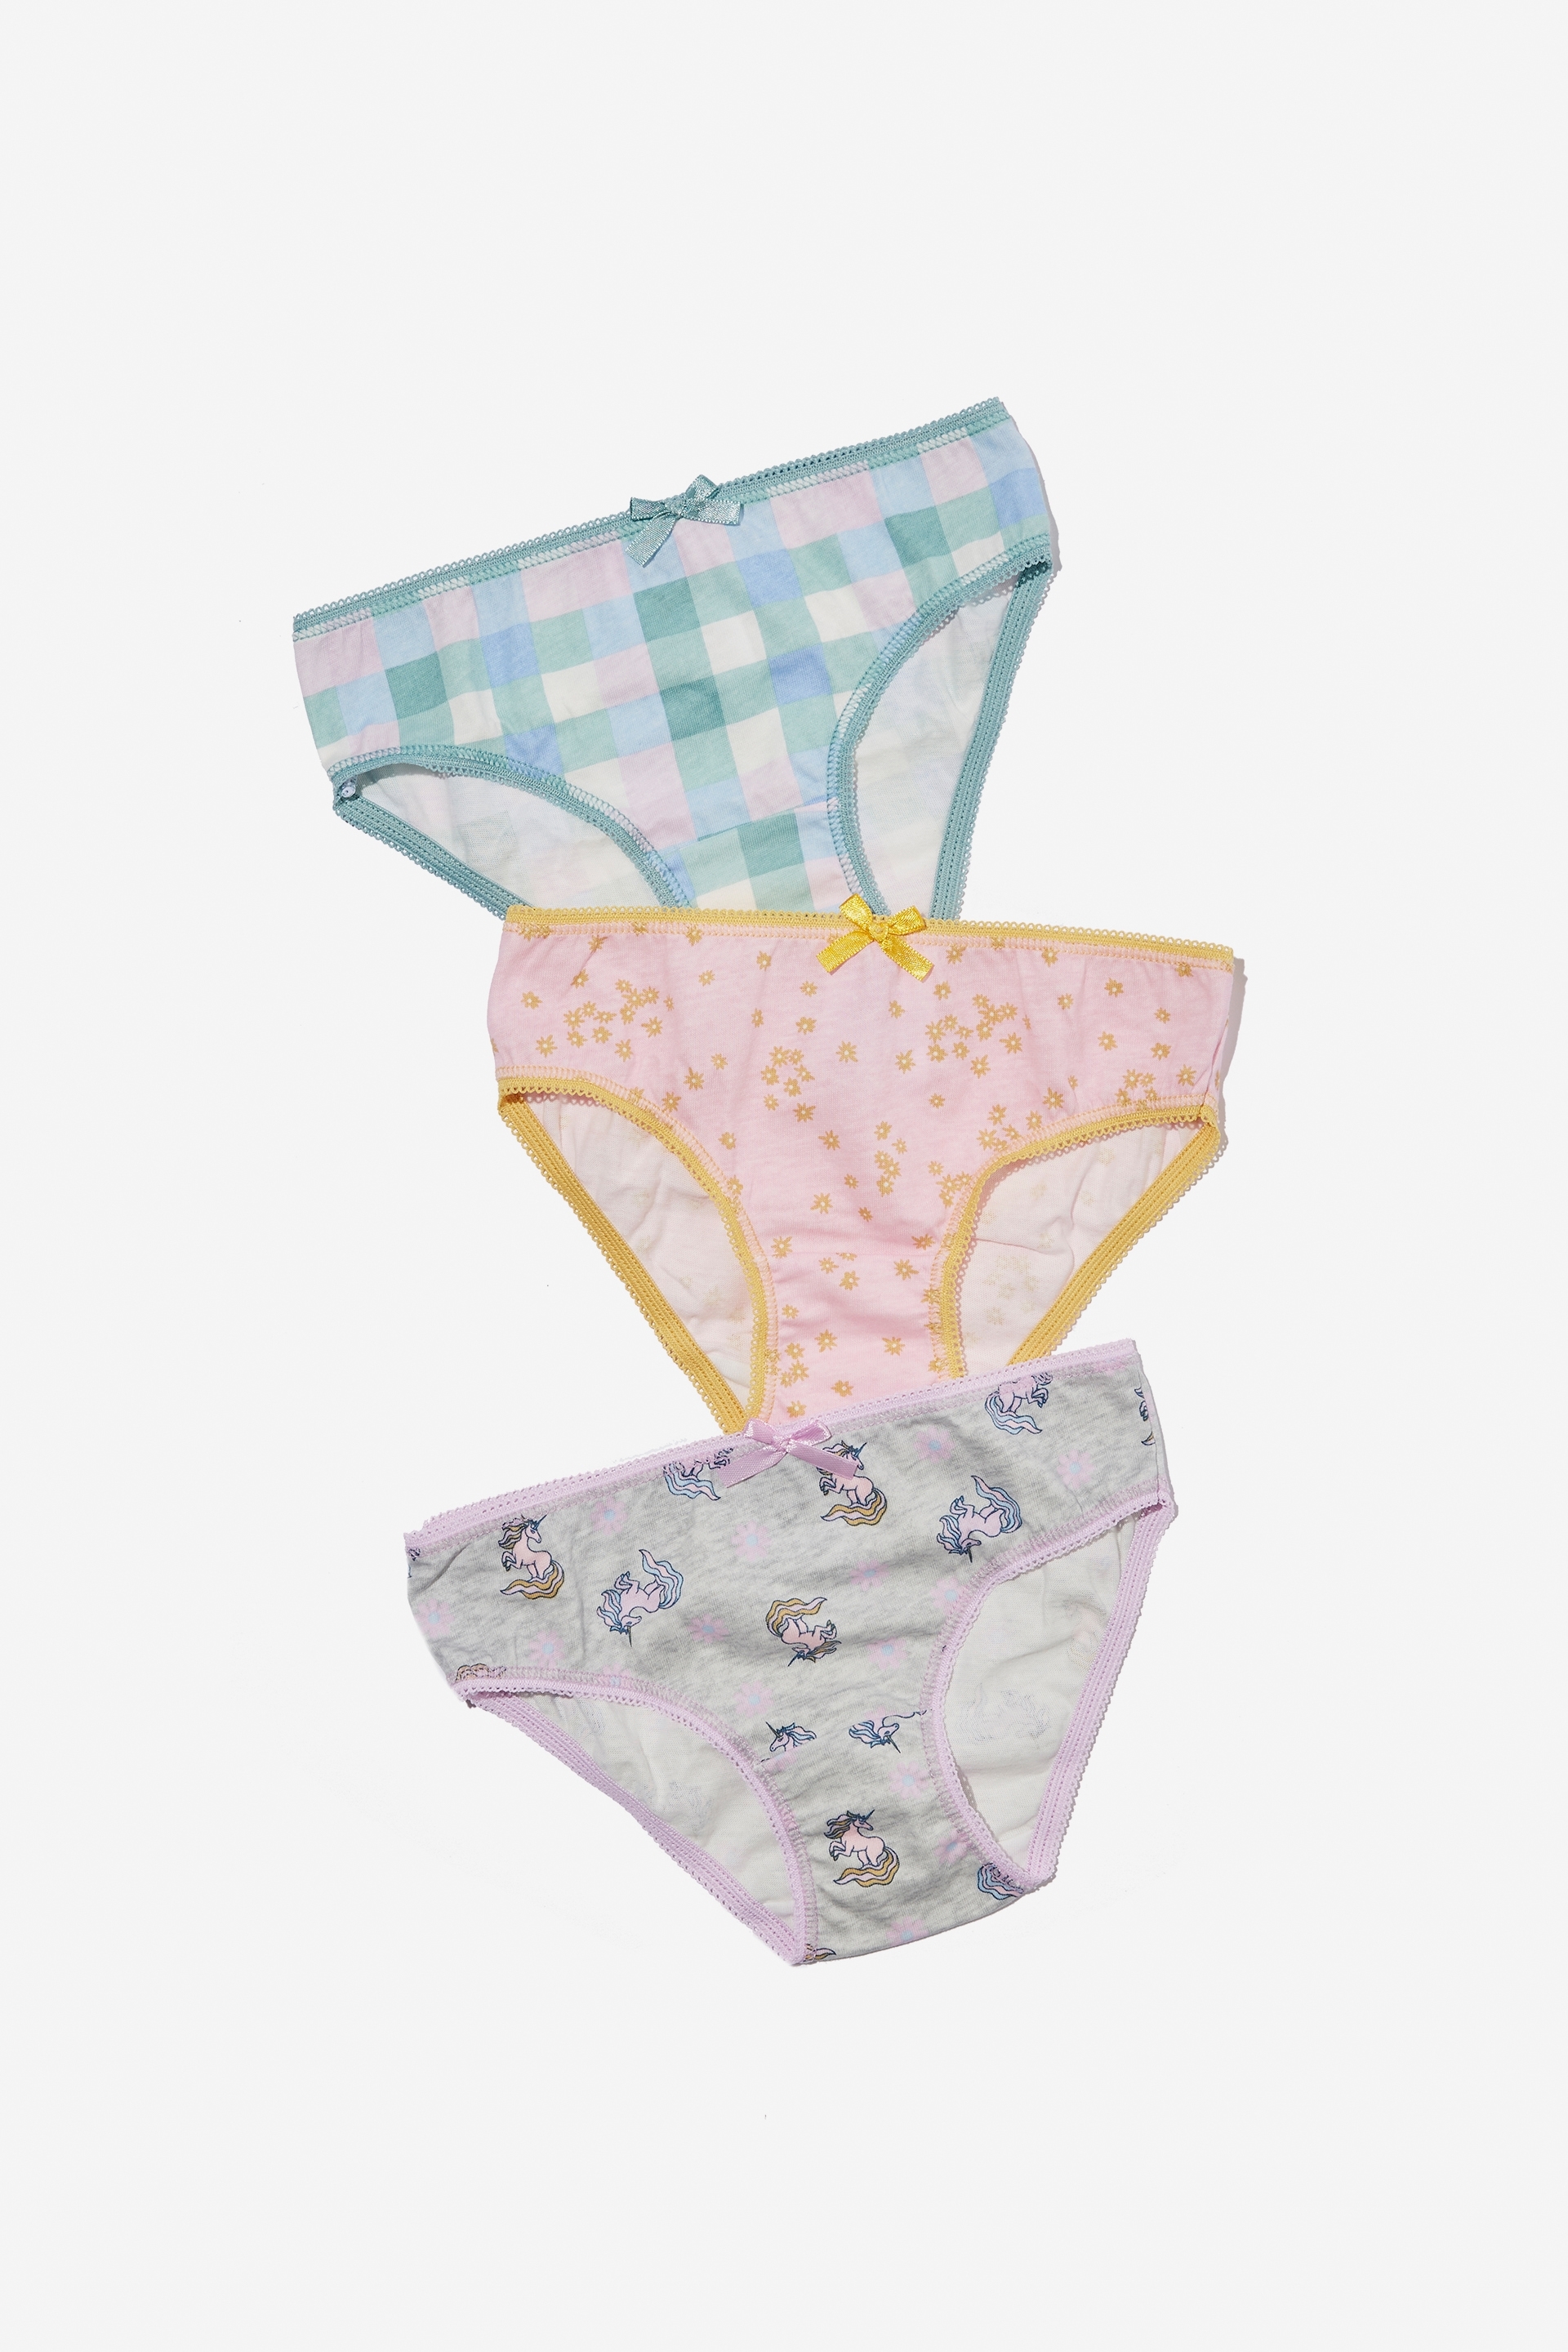 Cotton On Kids - 3 Pack Girls Underwear - Unicorn floral/summer grey marle